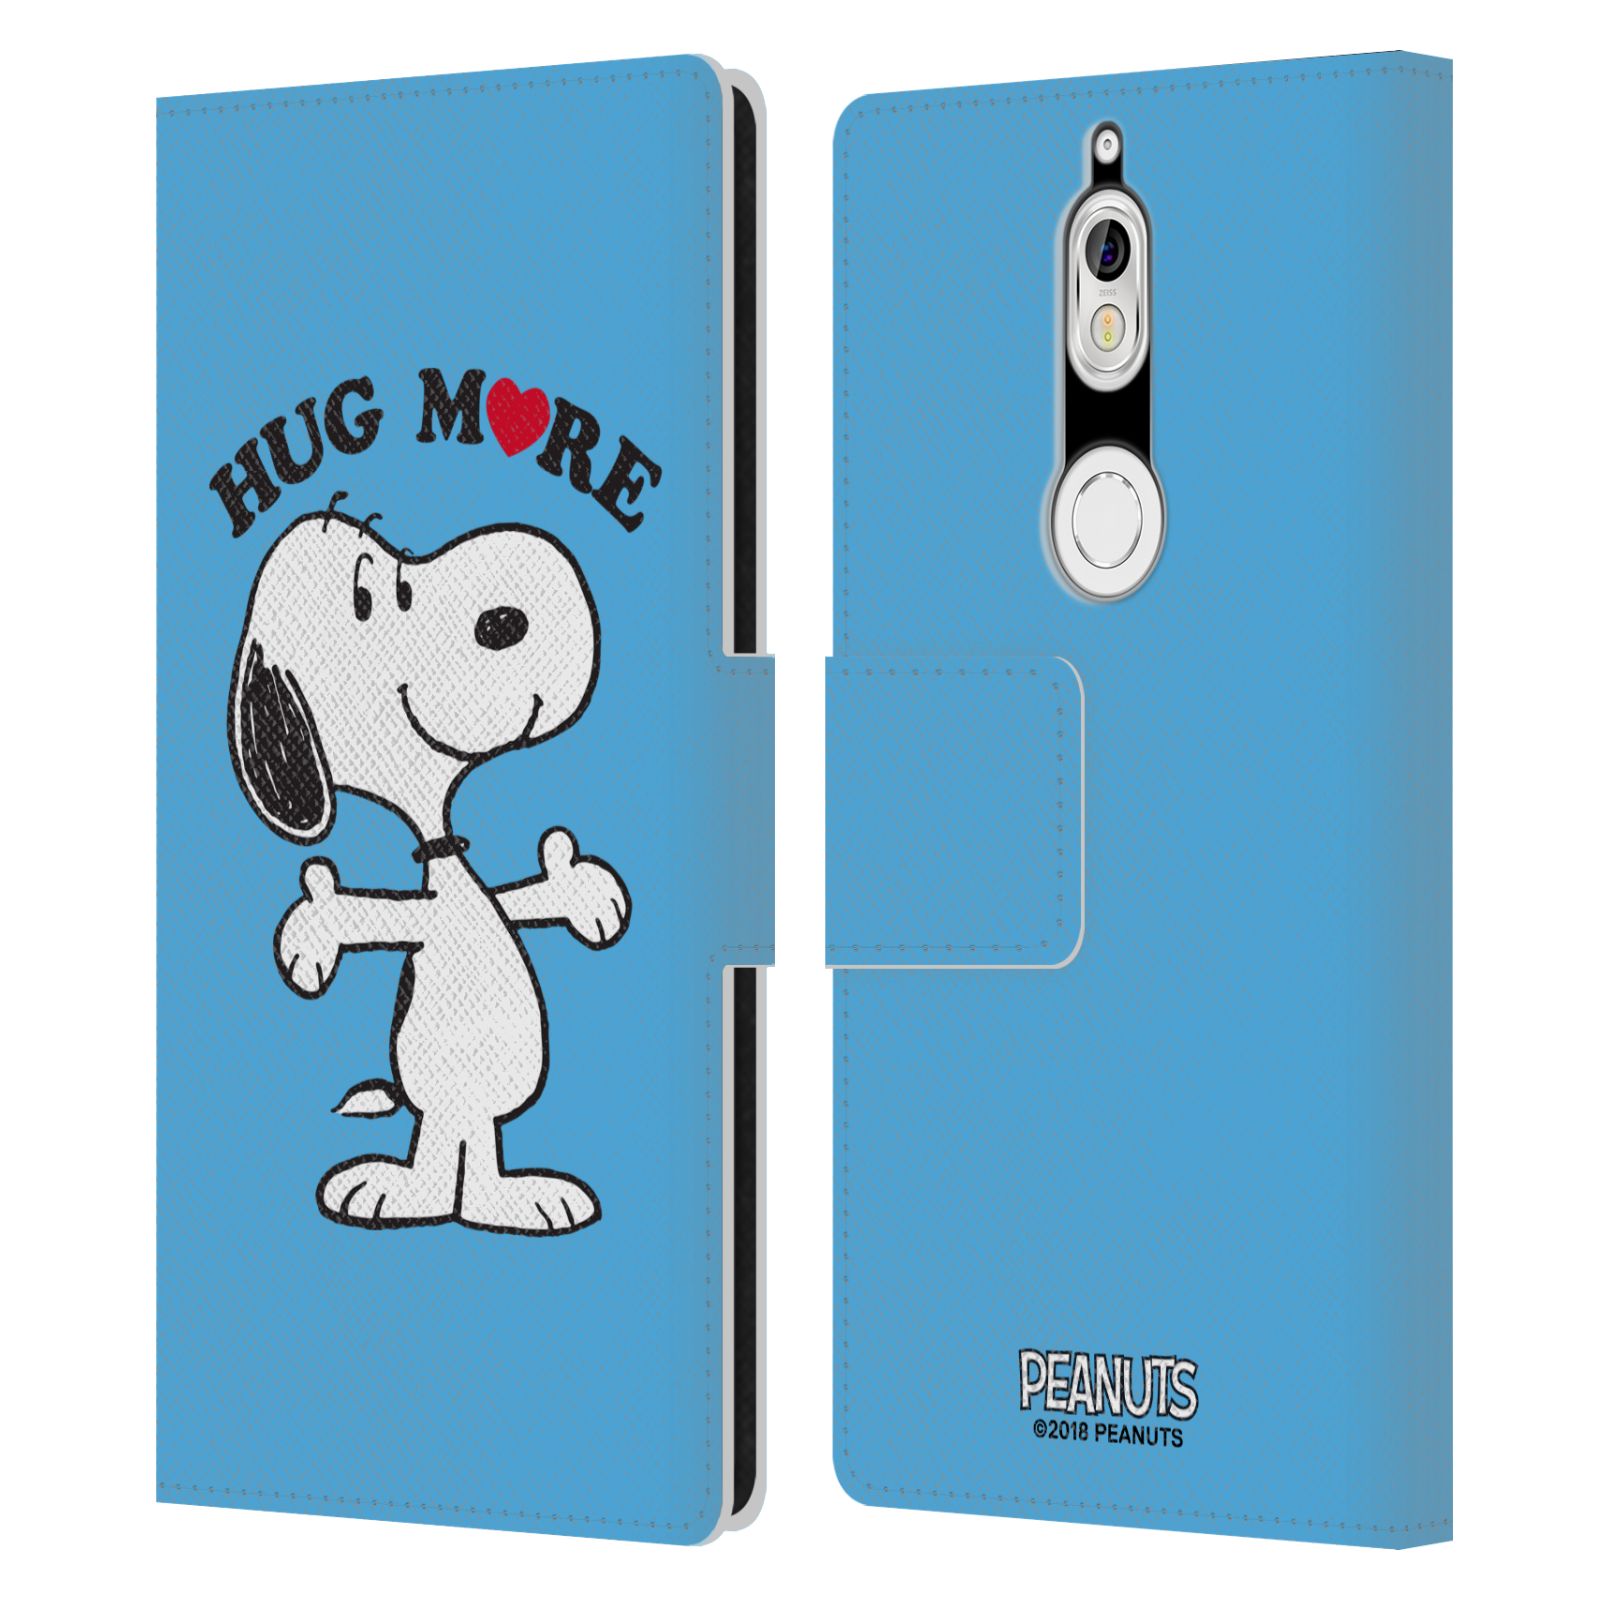 Pouzdro na mobil Nokia 7 - Head Case - Peanuts - pejsek snoopy světle modré objetí